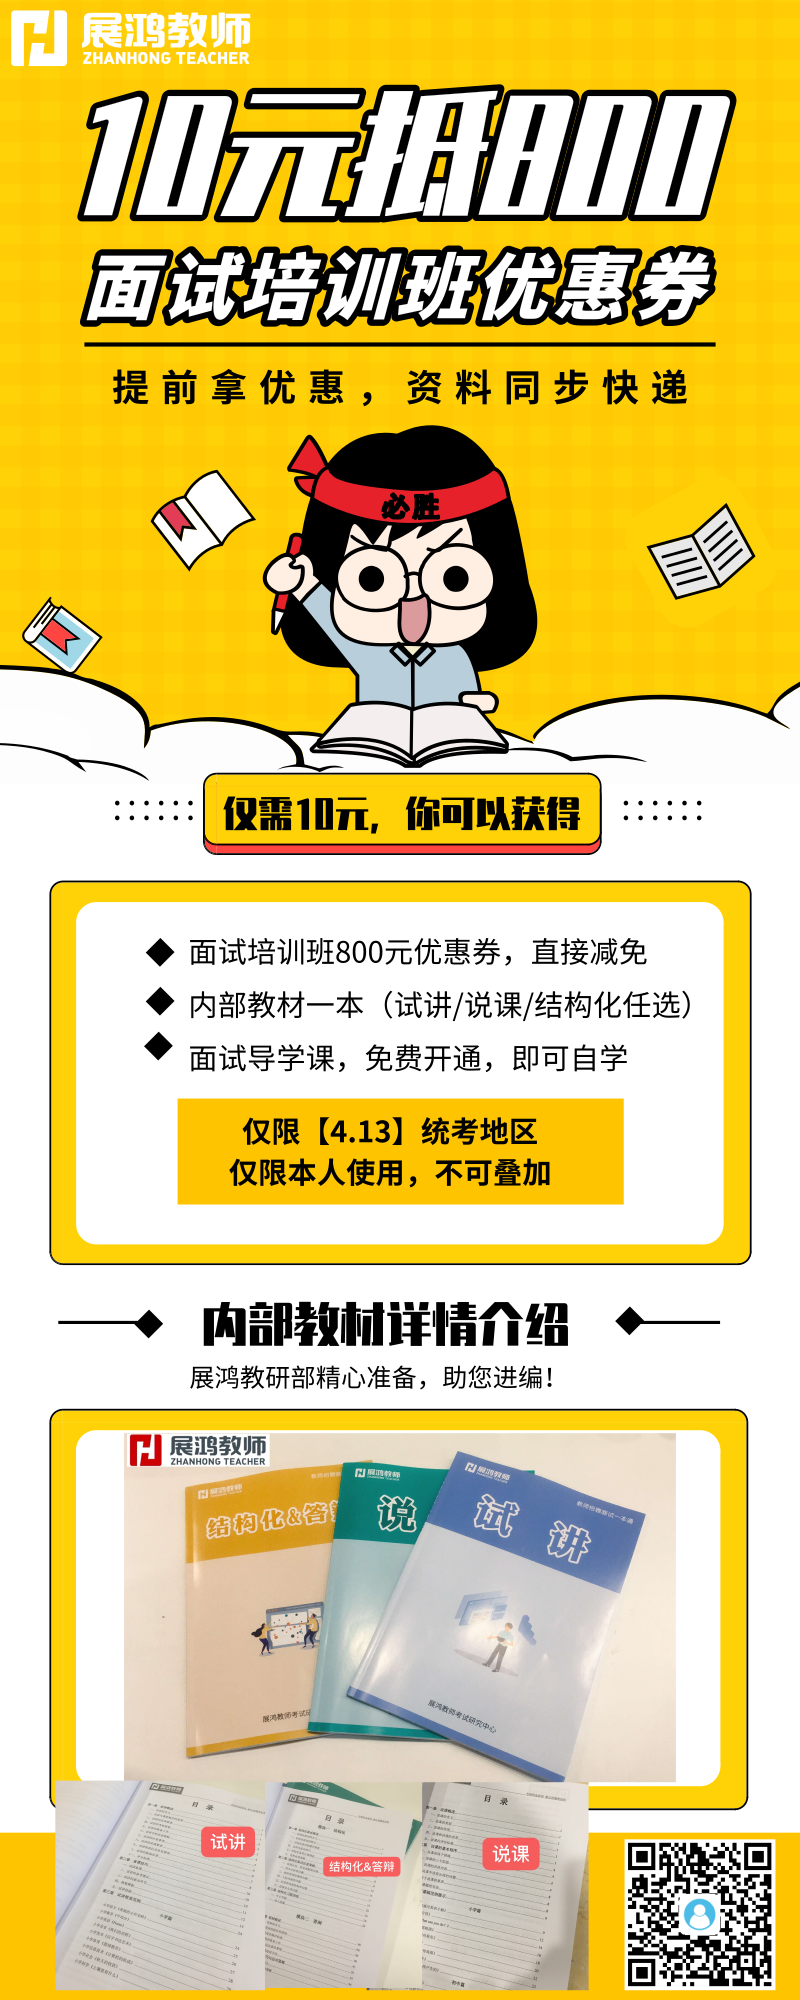 默认标题_营销长图_2019.04.23 (1).png